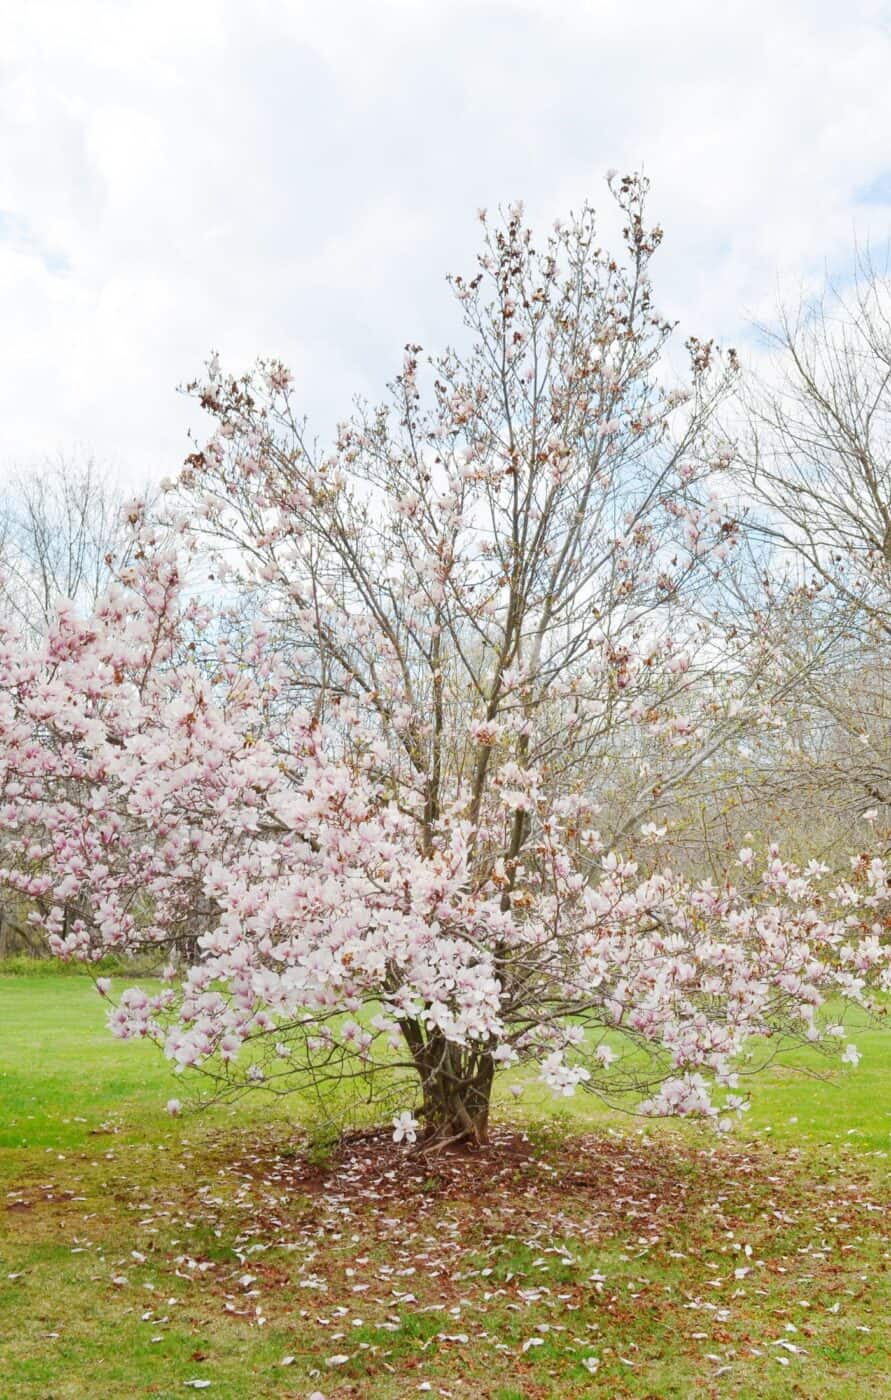 How big do magnolia trees get?